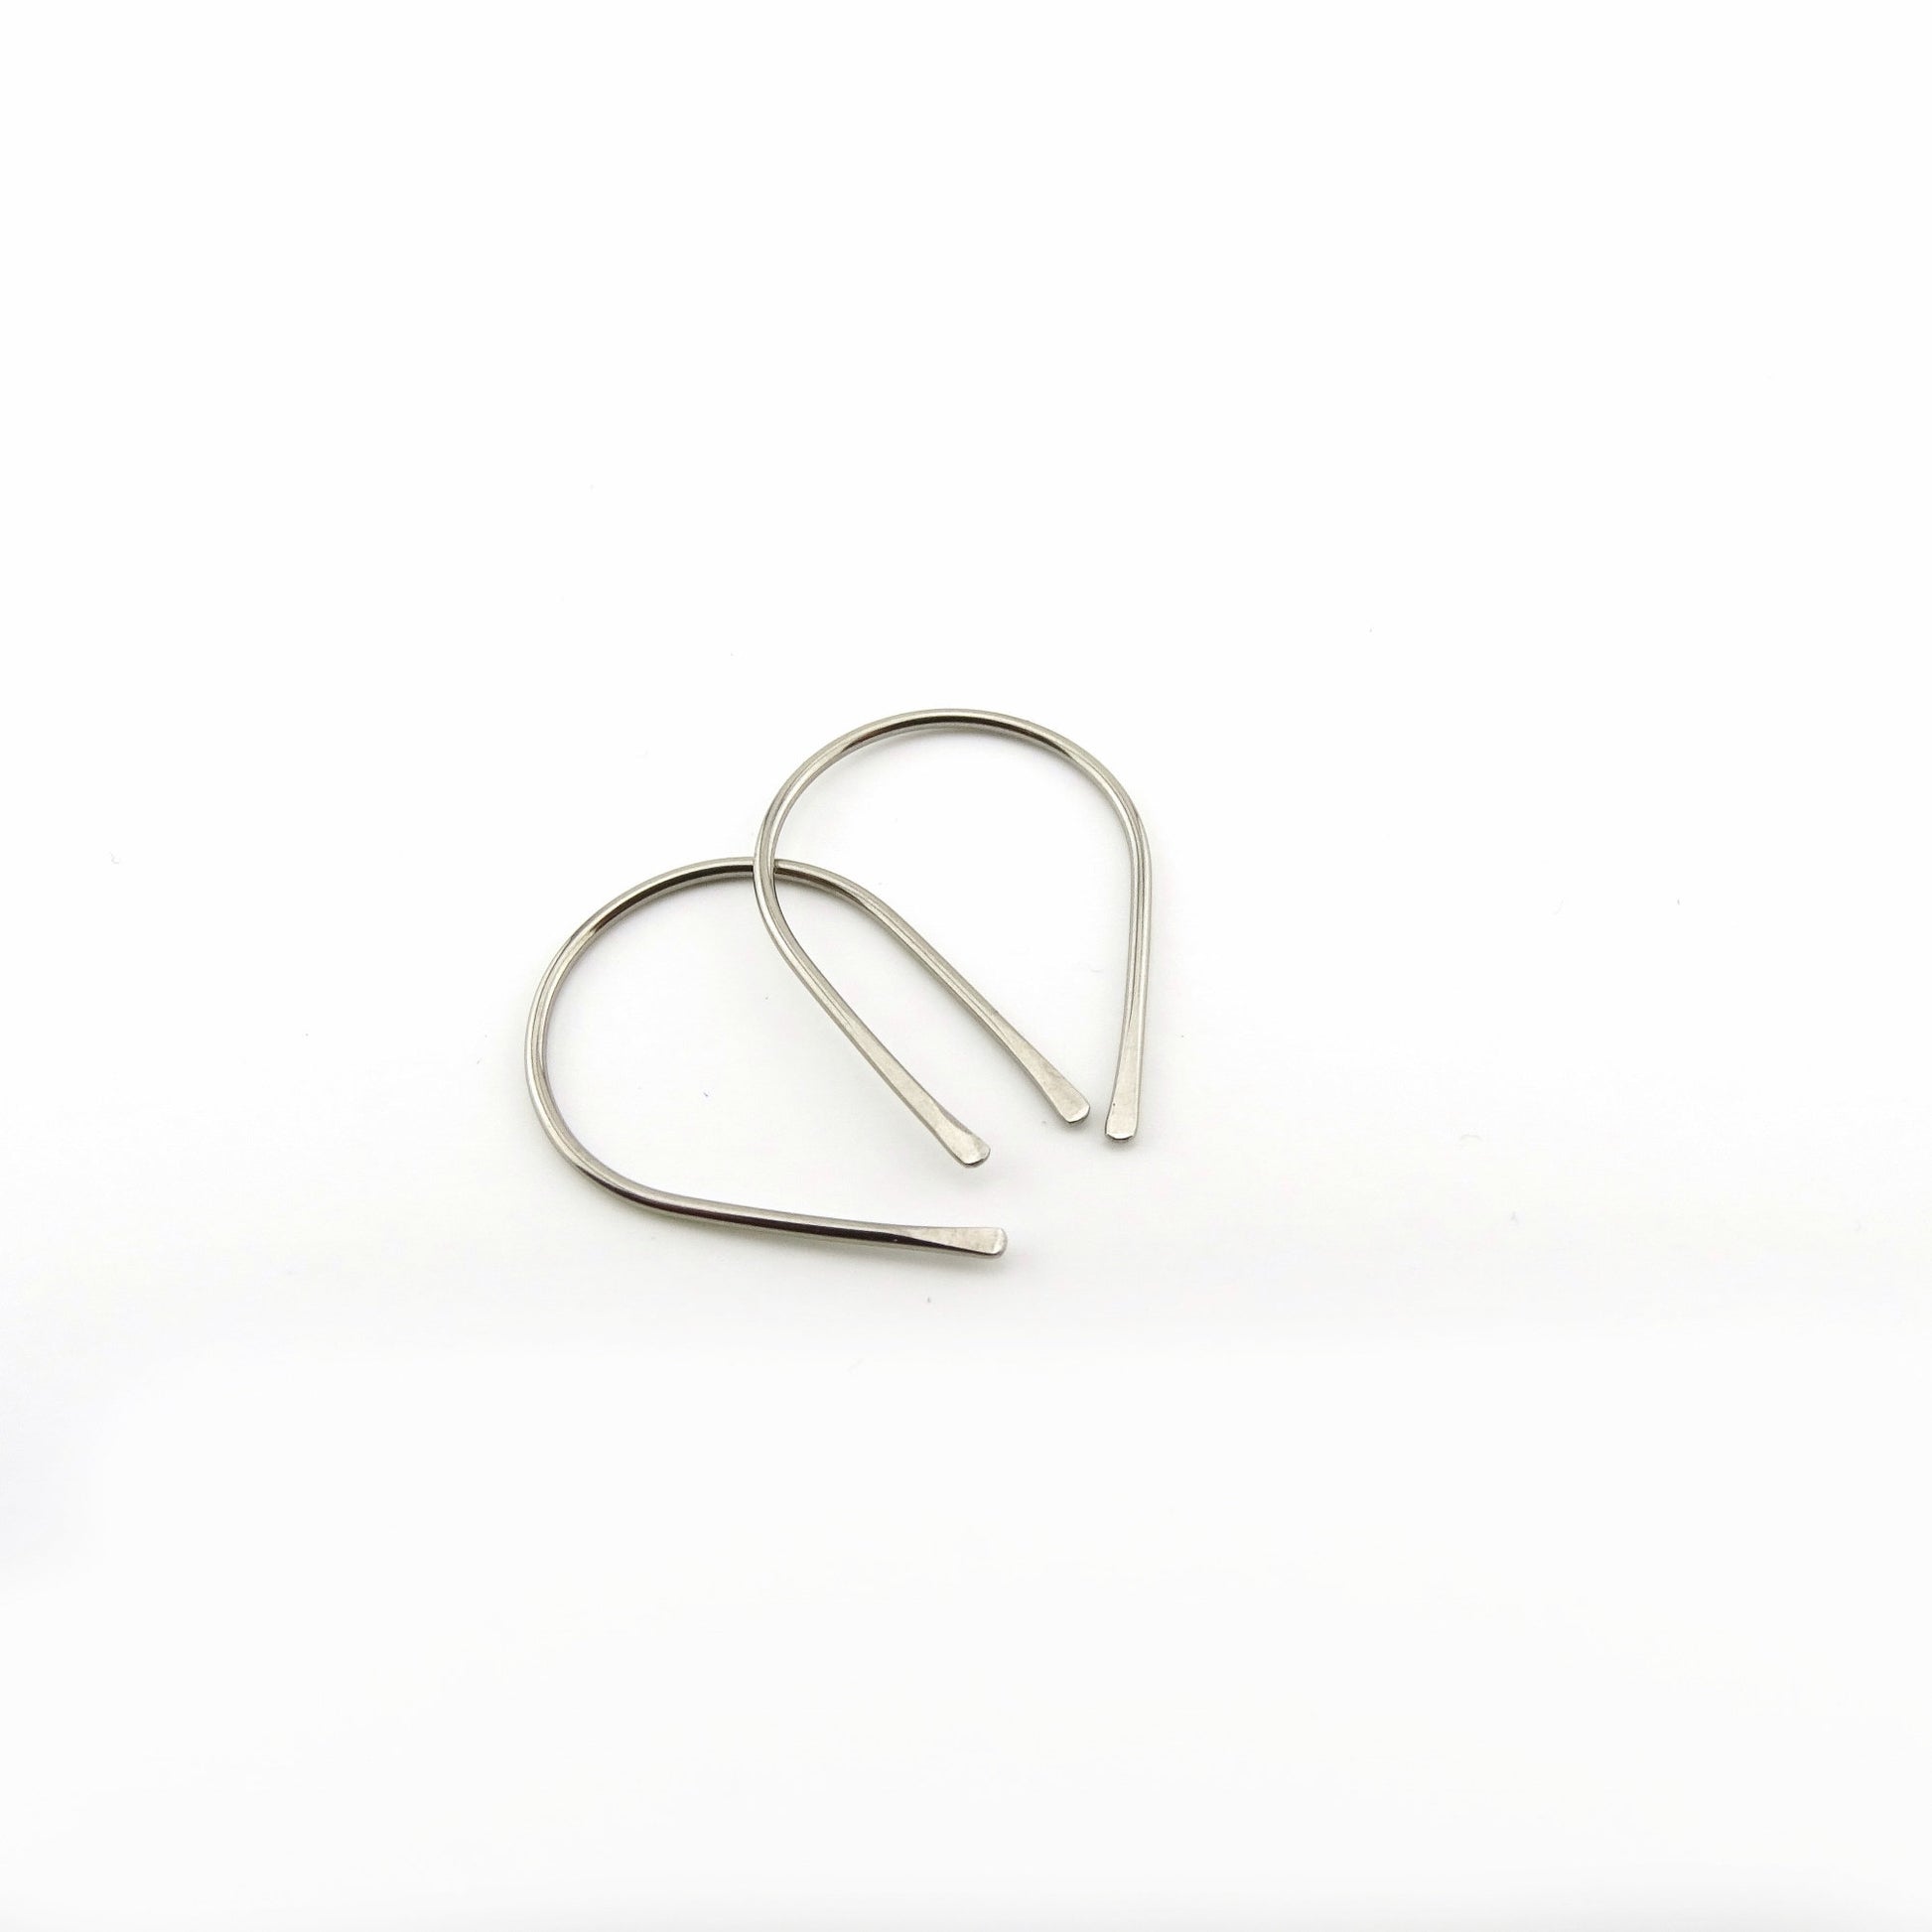 Silver Niobium Horseshoe Threader Earrings, Nickel Free Hypoallergenic Threaders for Sensitive Ears, U Shaped Arch Open Hoop Slider Earrings